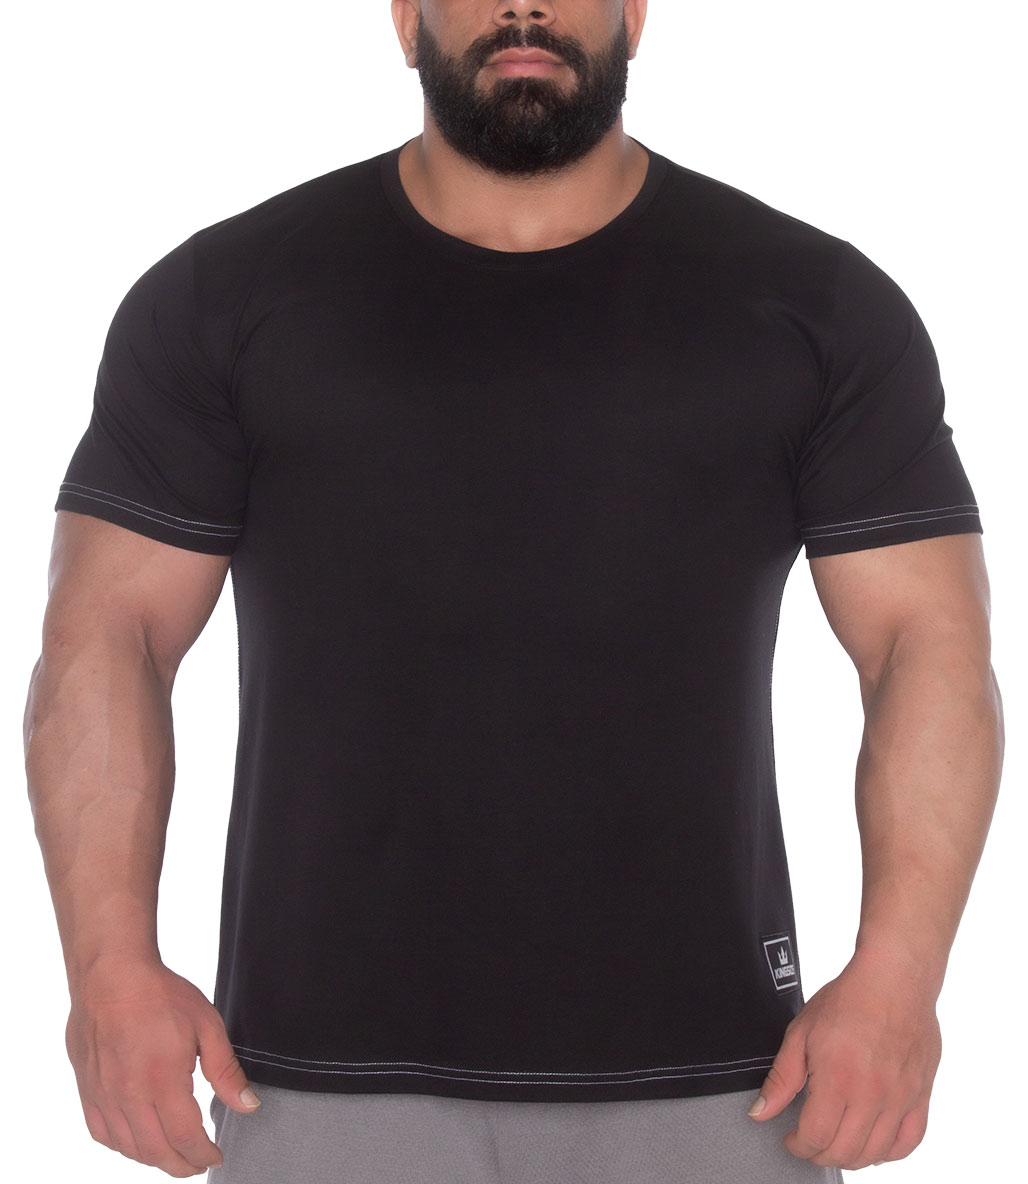 Kingsize Sbd Antrenman T-Shirt Siyah